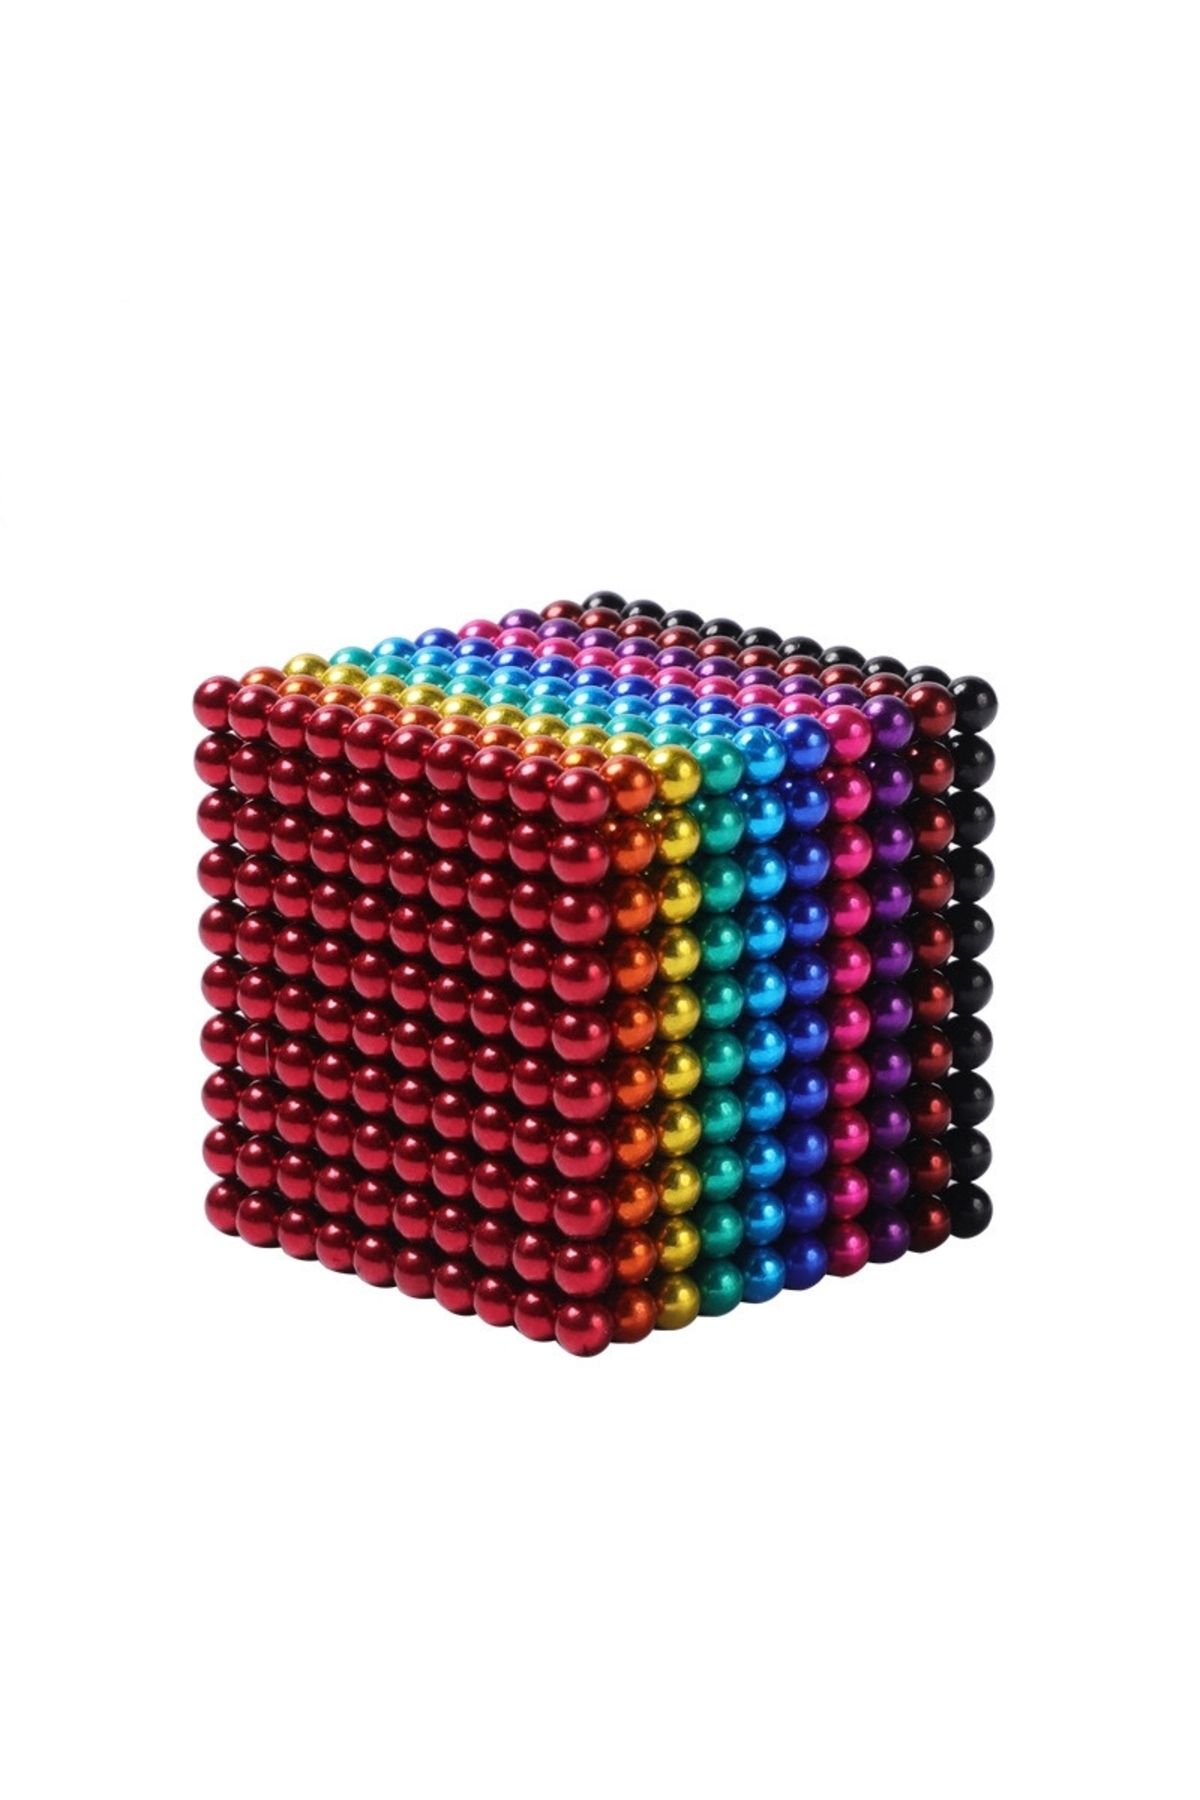 oyuncakchi Sihirli Manyetik Toplar Neodyum Mıknatıs Küp Bilye 216 Adet Neo Cube Küp